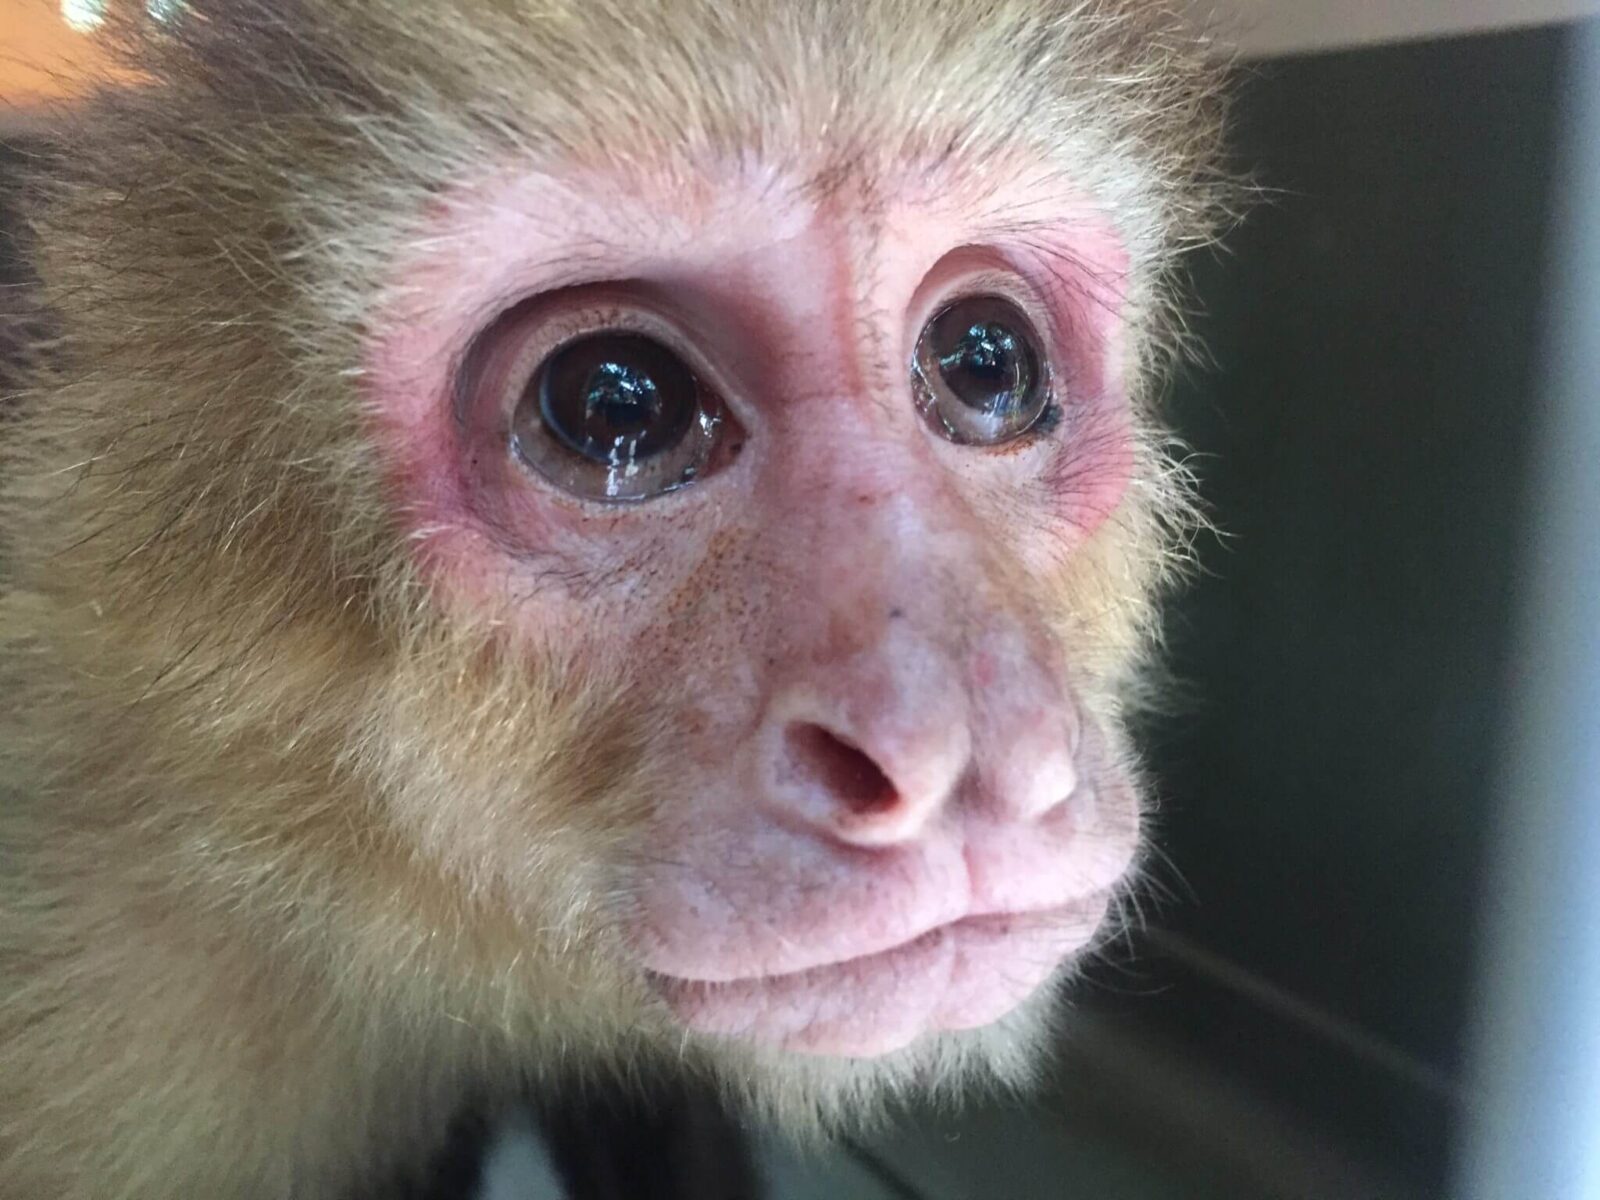 El mono Cara Blanca rescate — Santuario de Vida Silvestre Natuwa